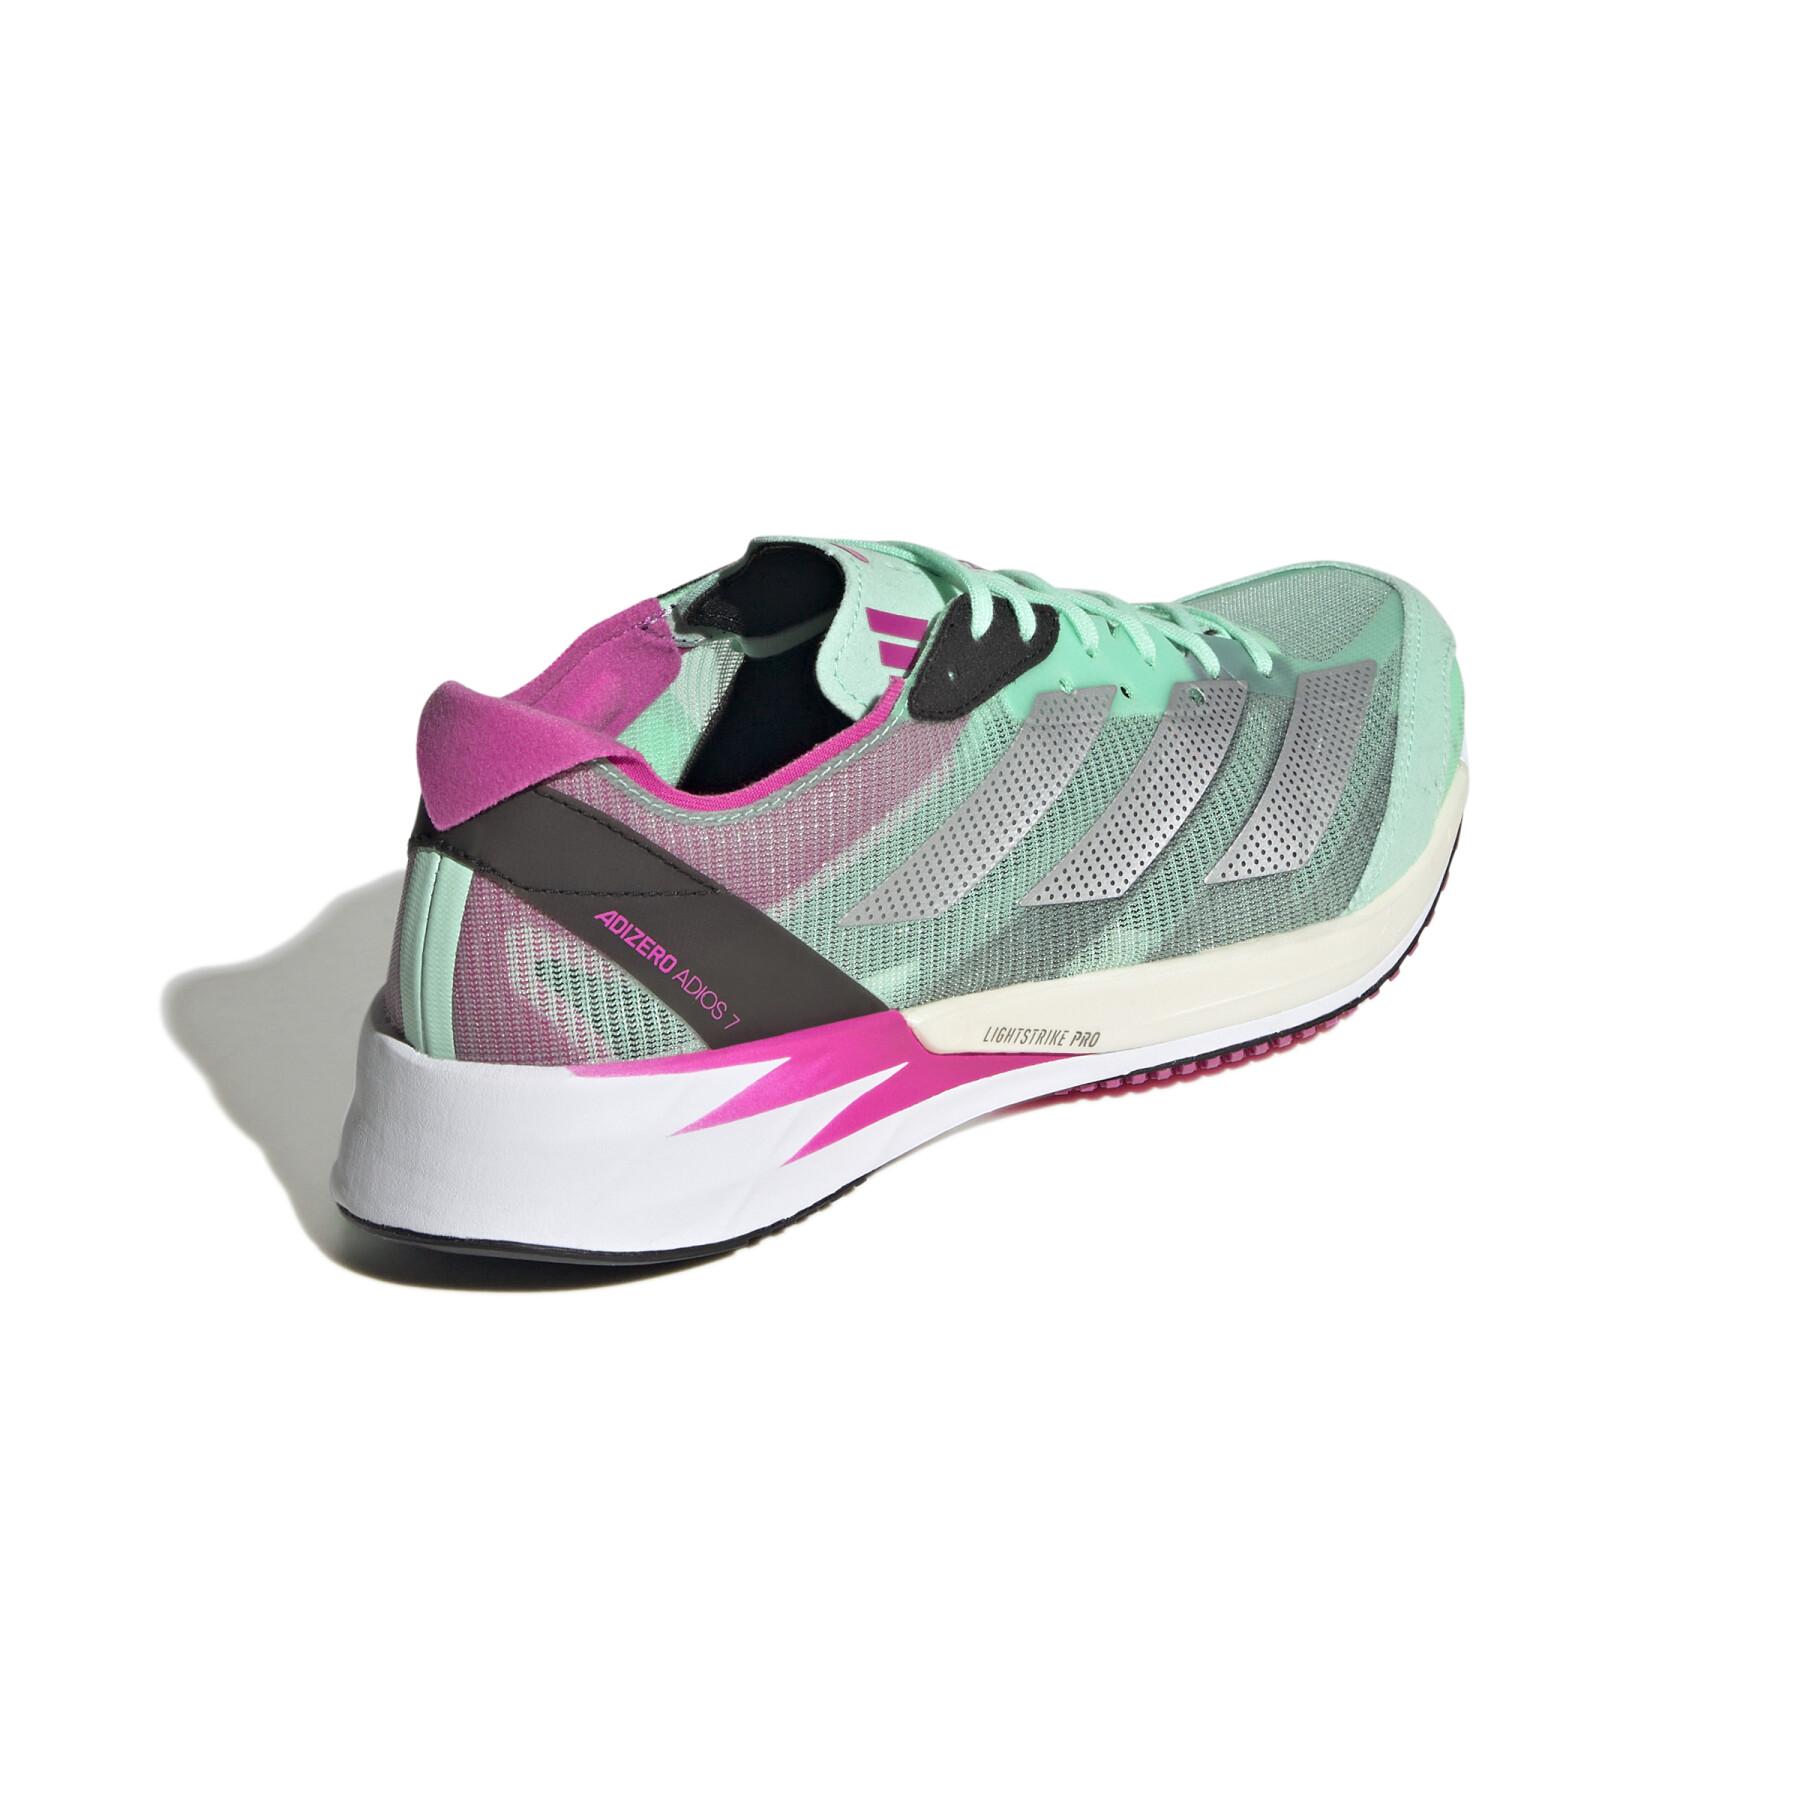 Chaussure de running femme adidas Adizero Adios 7